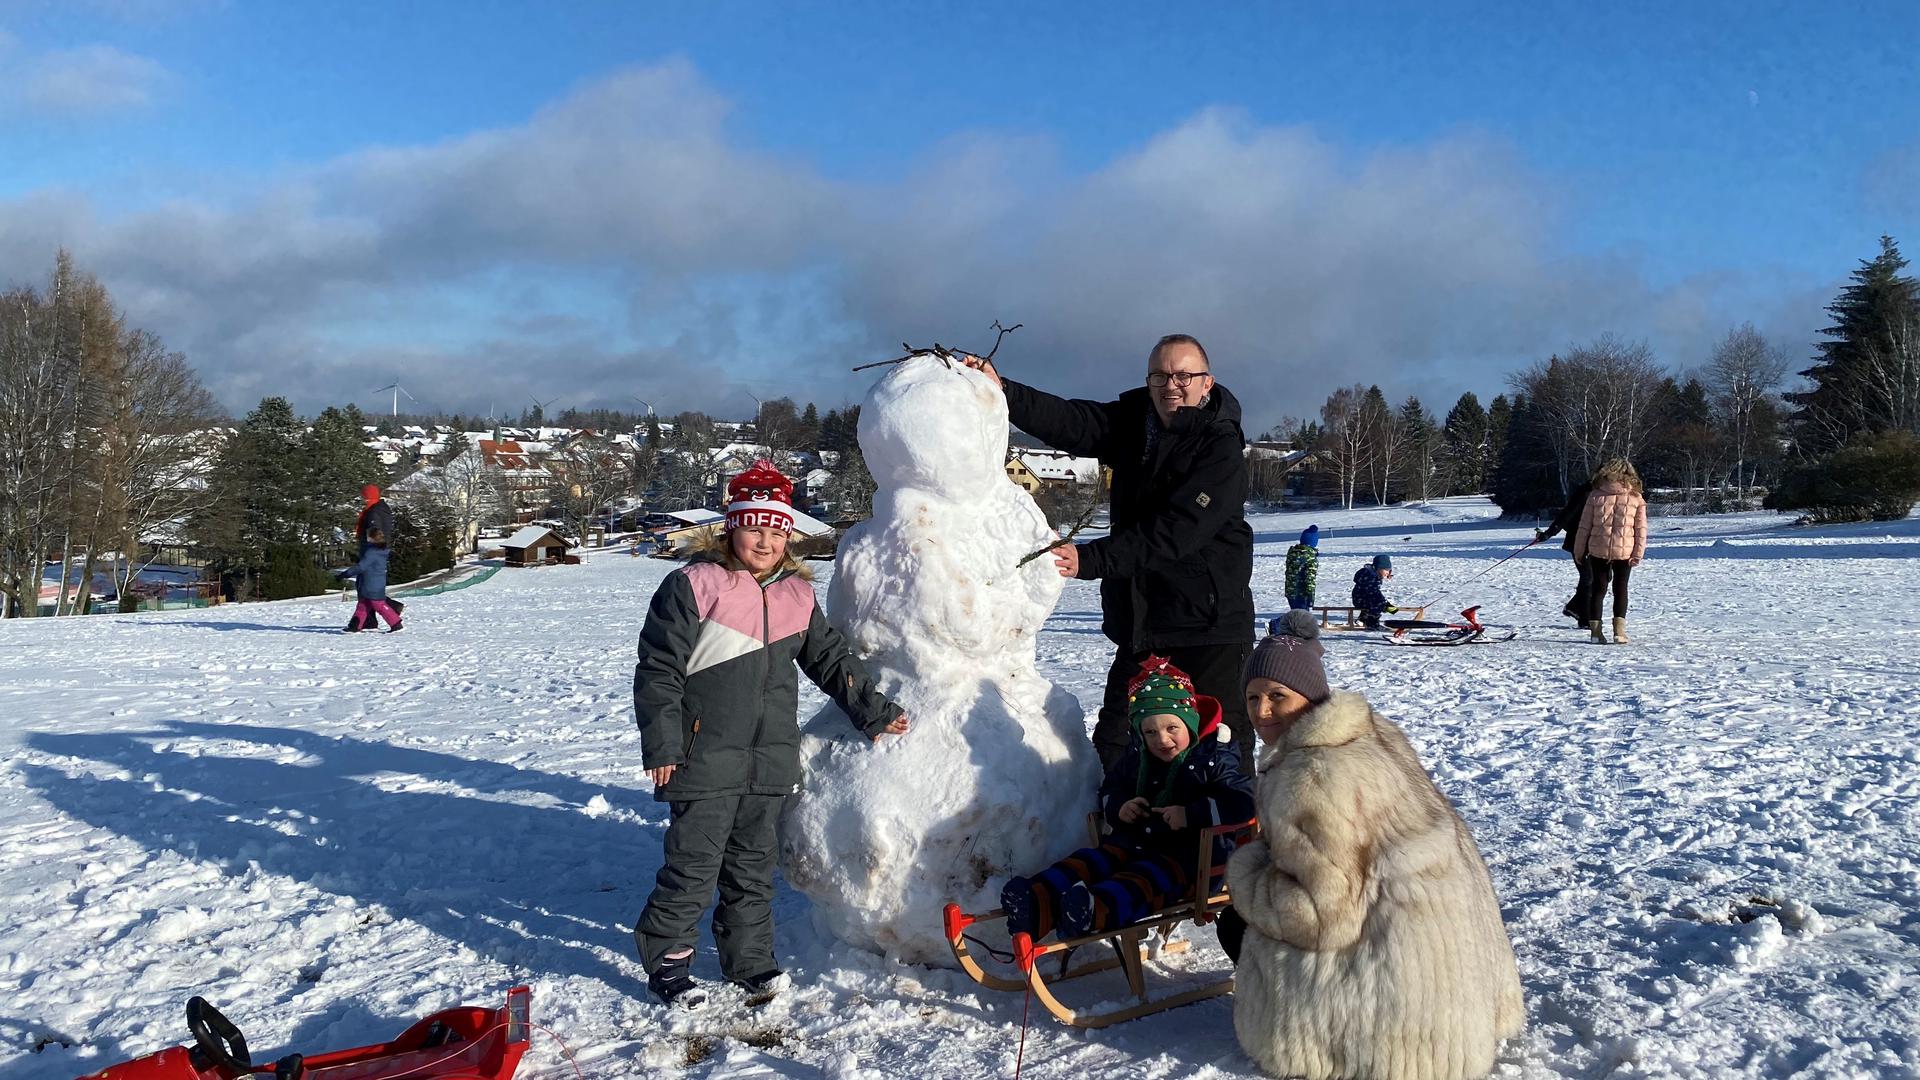 Hey Mister Snowman: Familie Jurcevic aus Waldbronn ist zum Rodeln auf den Dobel gekommen. Für einen Mann in weiß hat die Schneedecke auch gereicht.